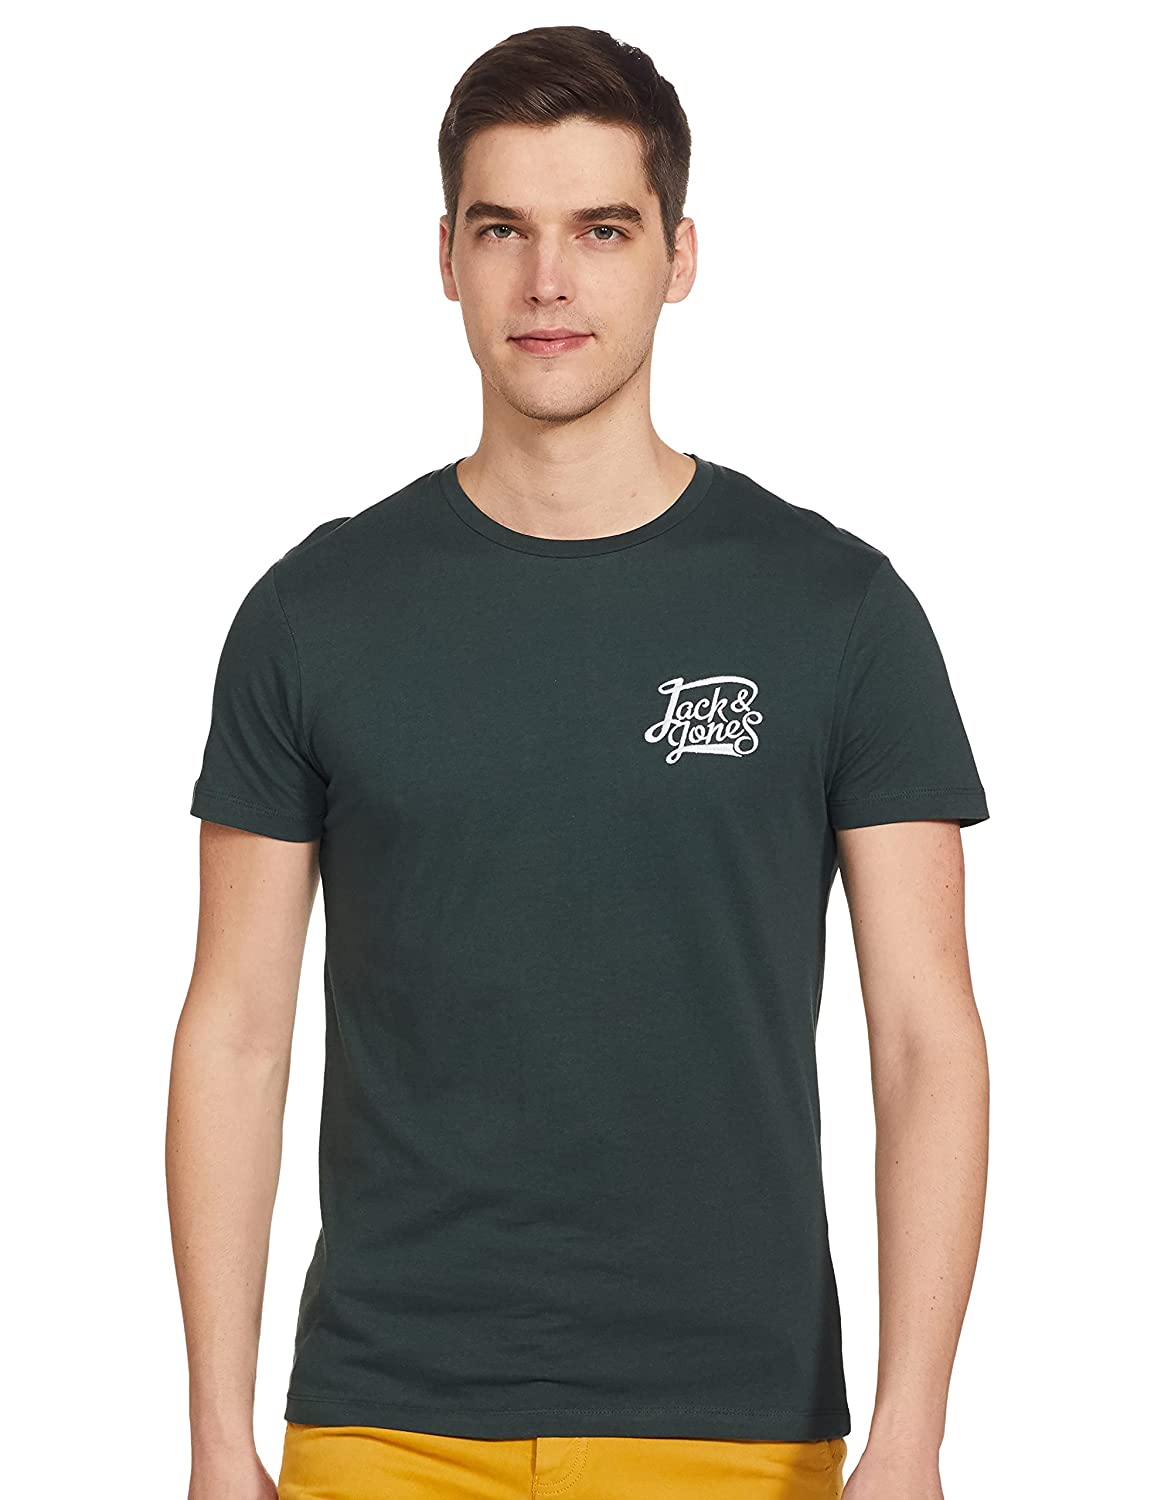 Jack & Jones Men's Slim T-Shirt brands